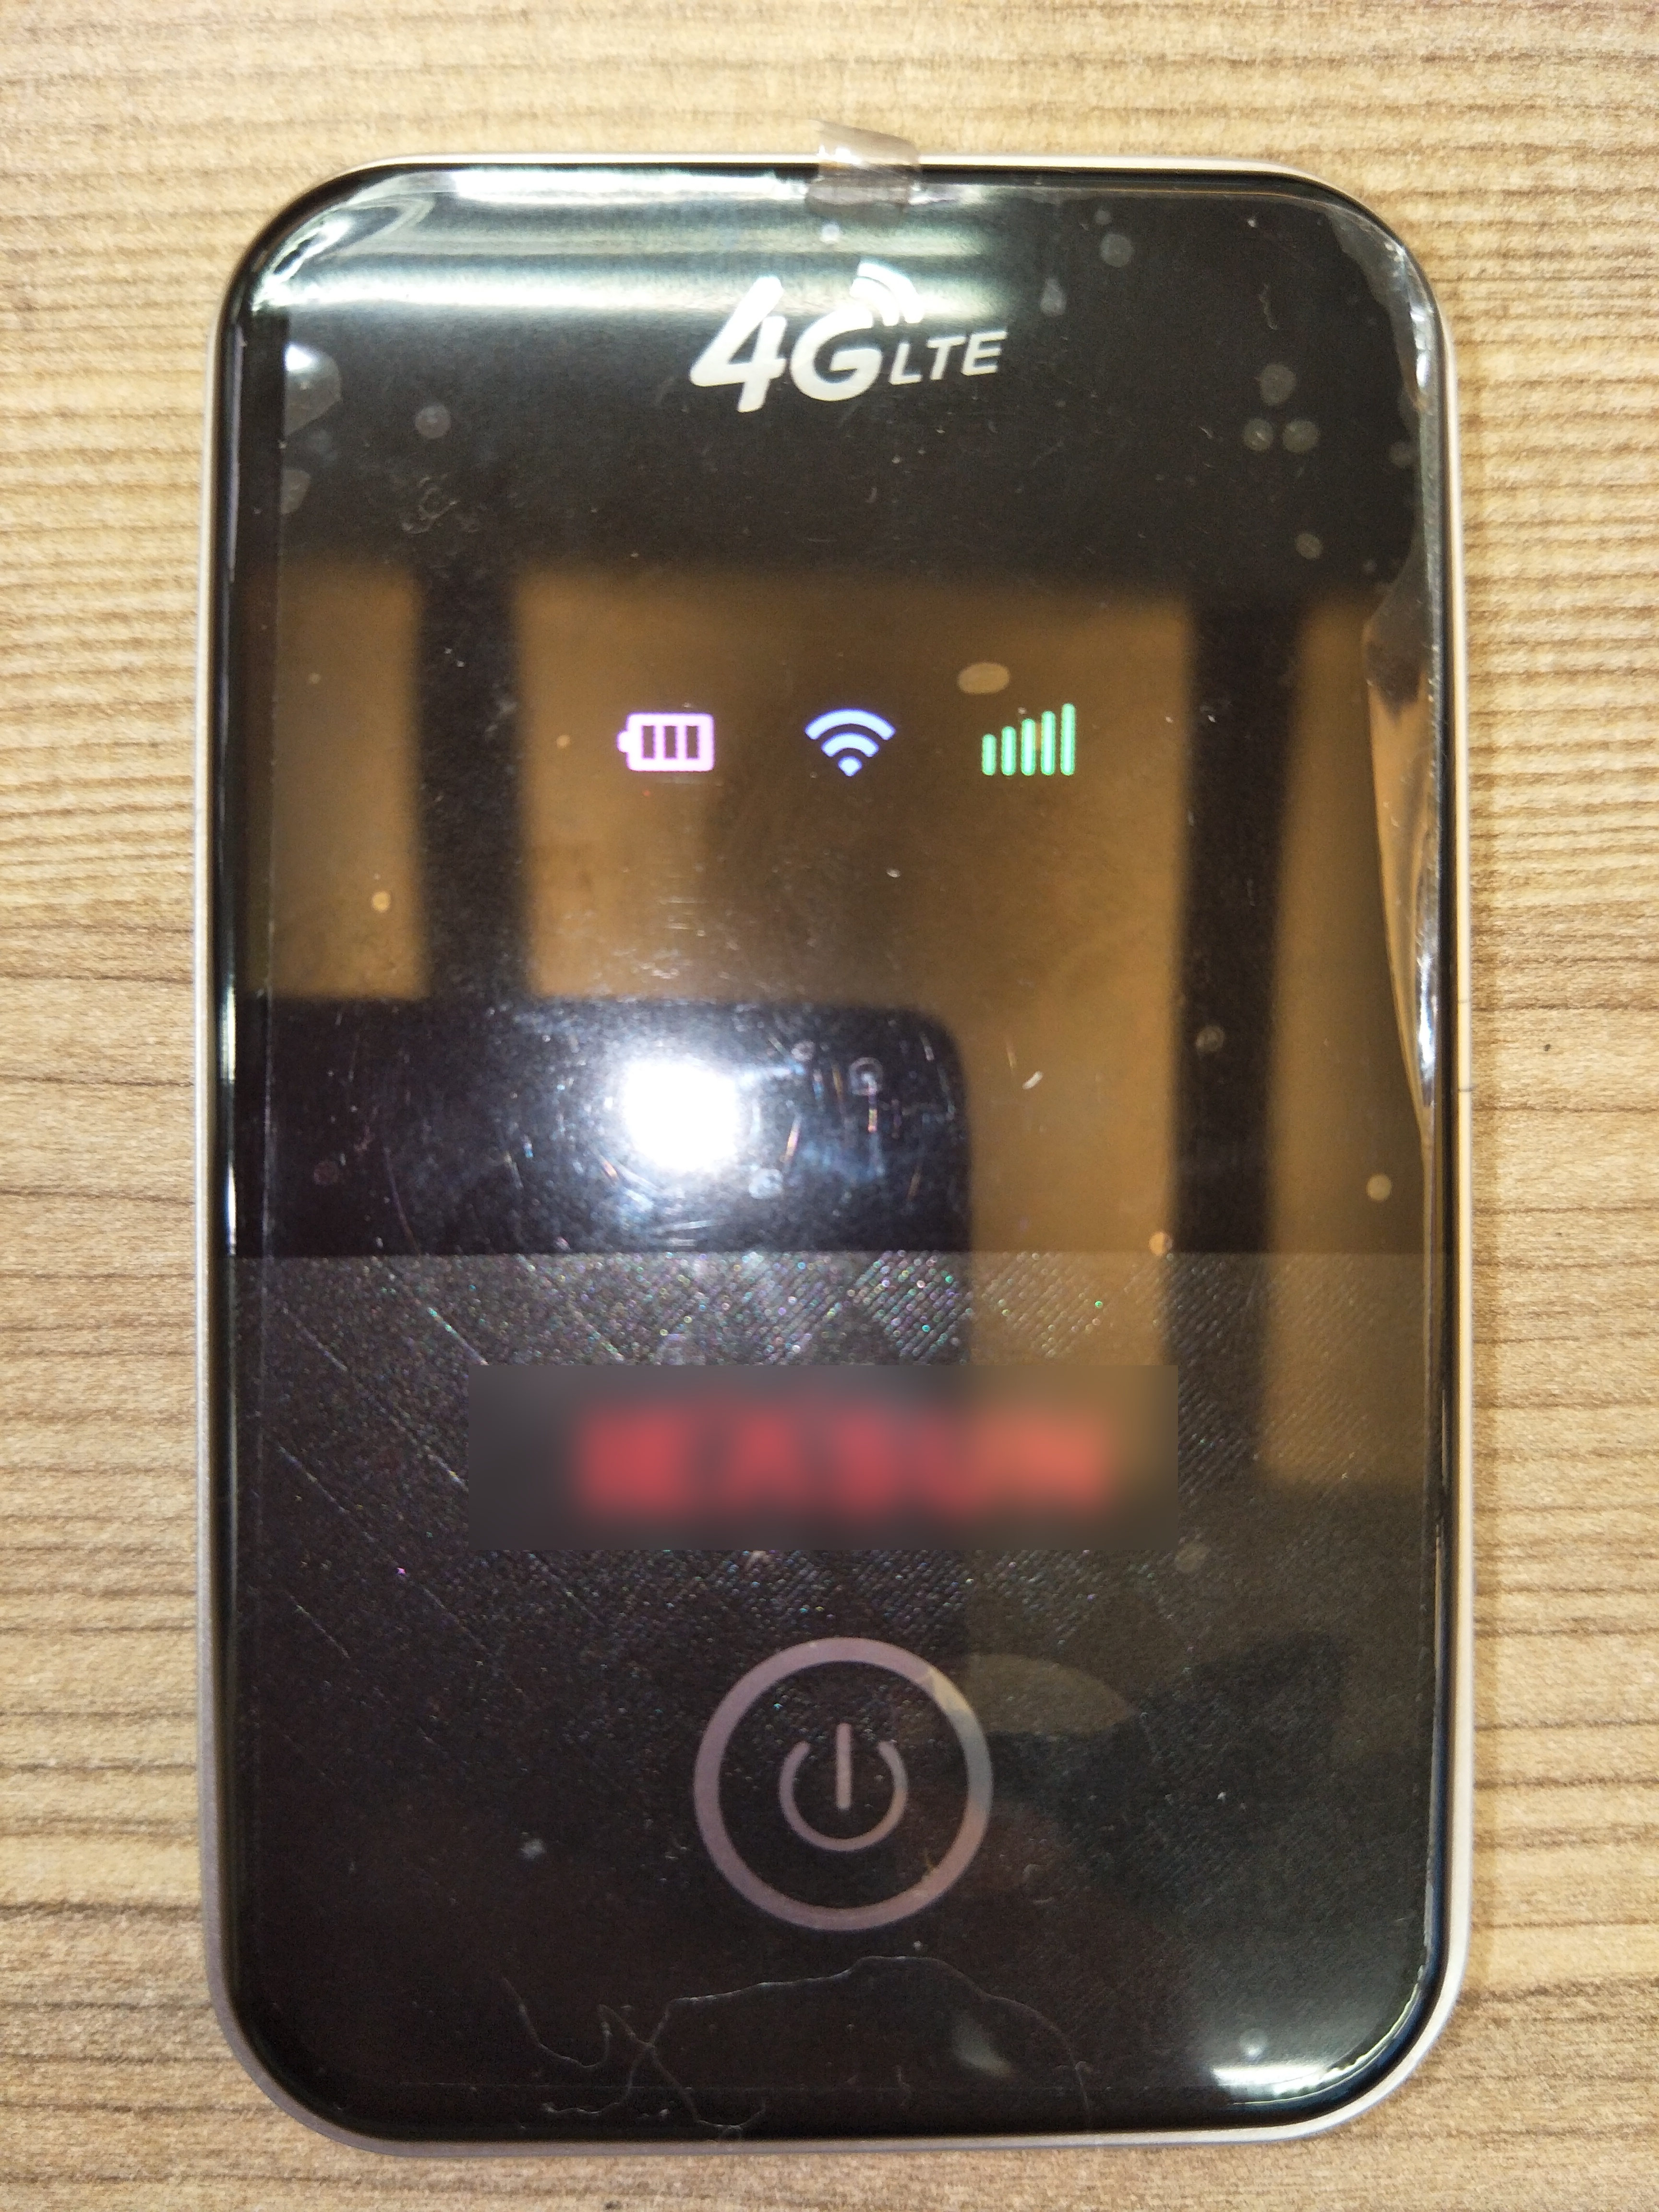 品名: 3G/4G LTE行動Wi-Fi分享器無線隨身WiFi攜帶式分享器SIM卡插卡(黑色) J-14453